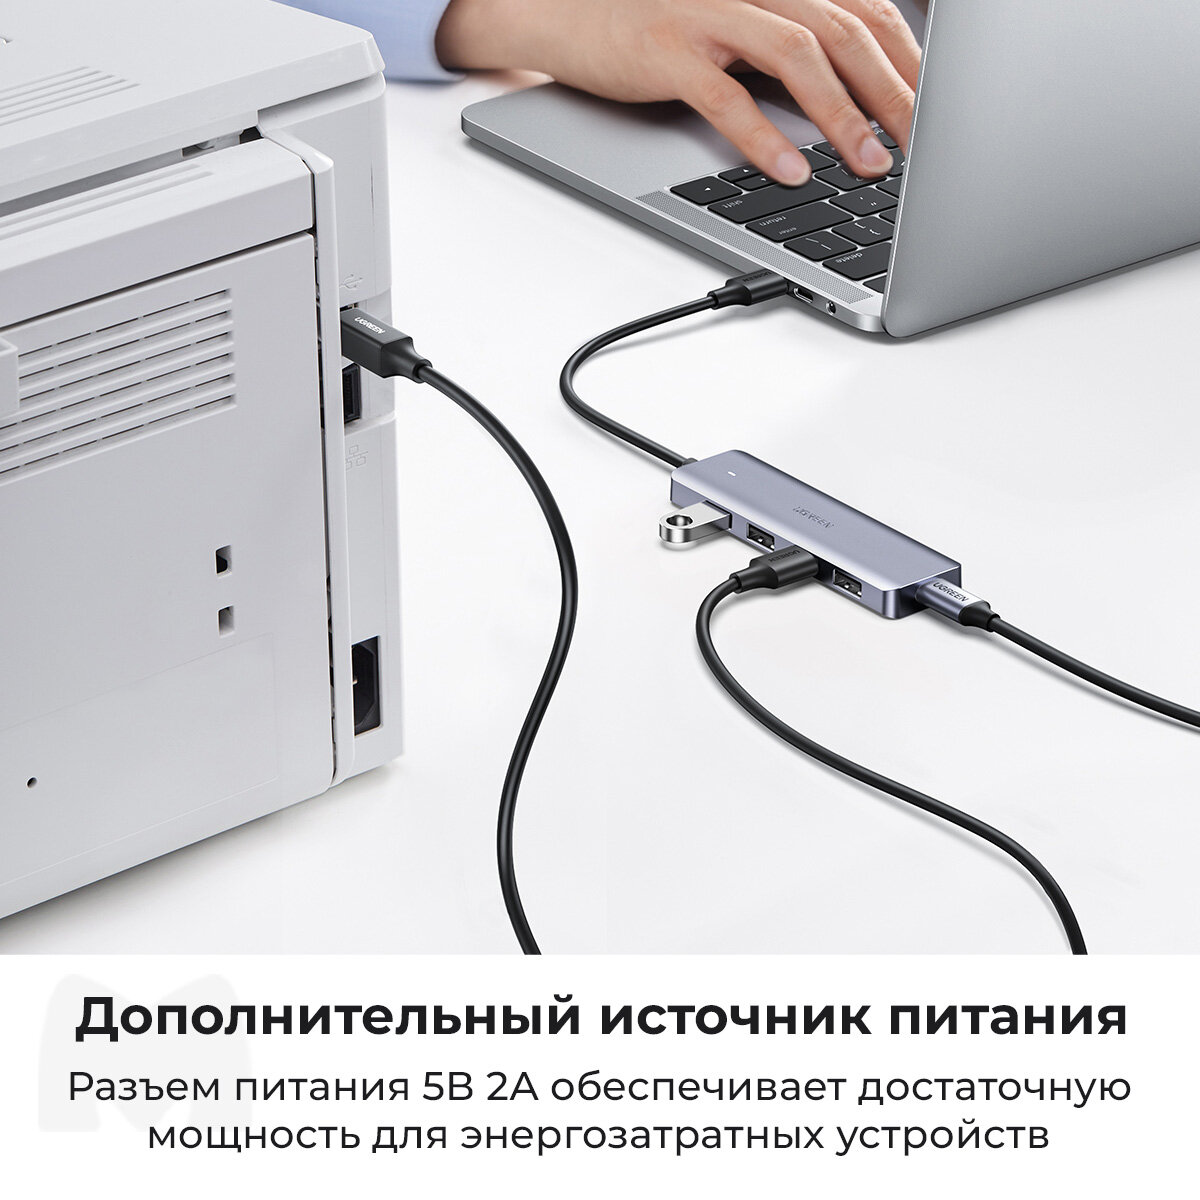 UGREEN. USB концентратор (хаб) 4 в 1, 4 x USB 3.0 (50985)